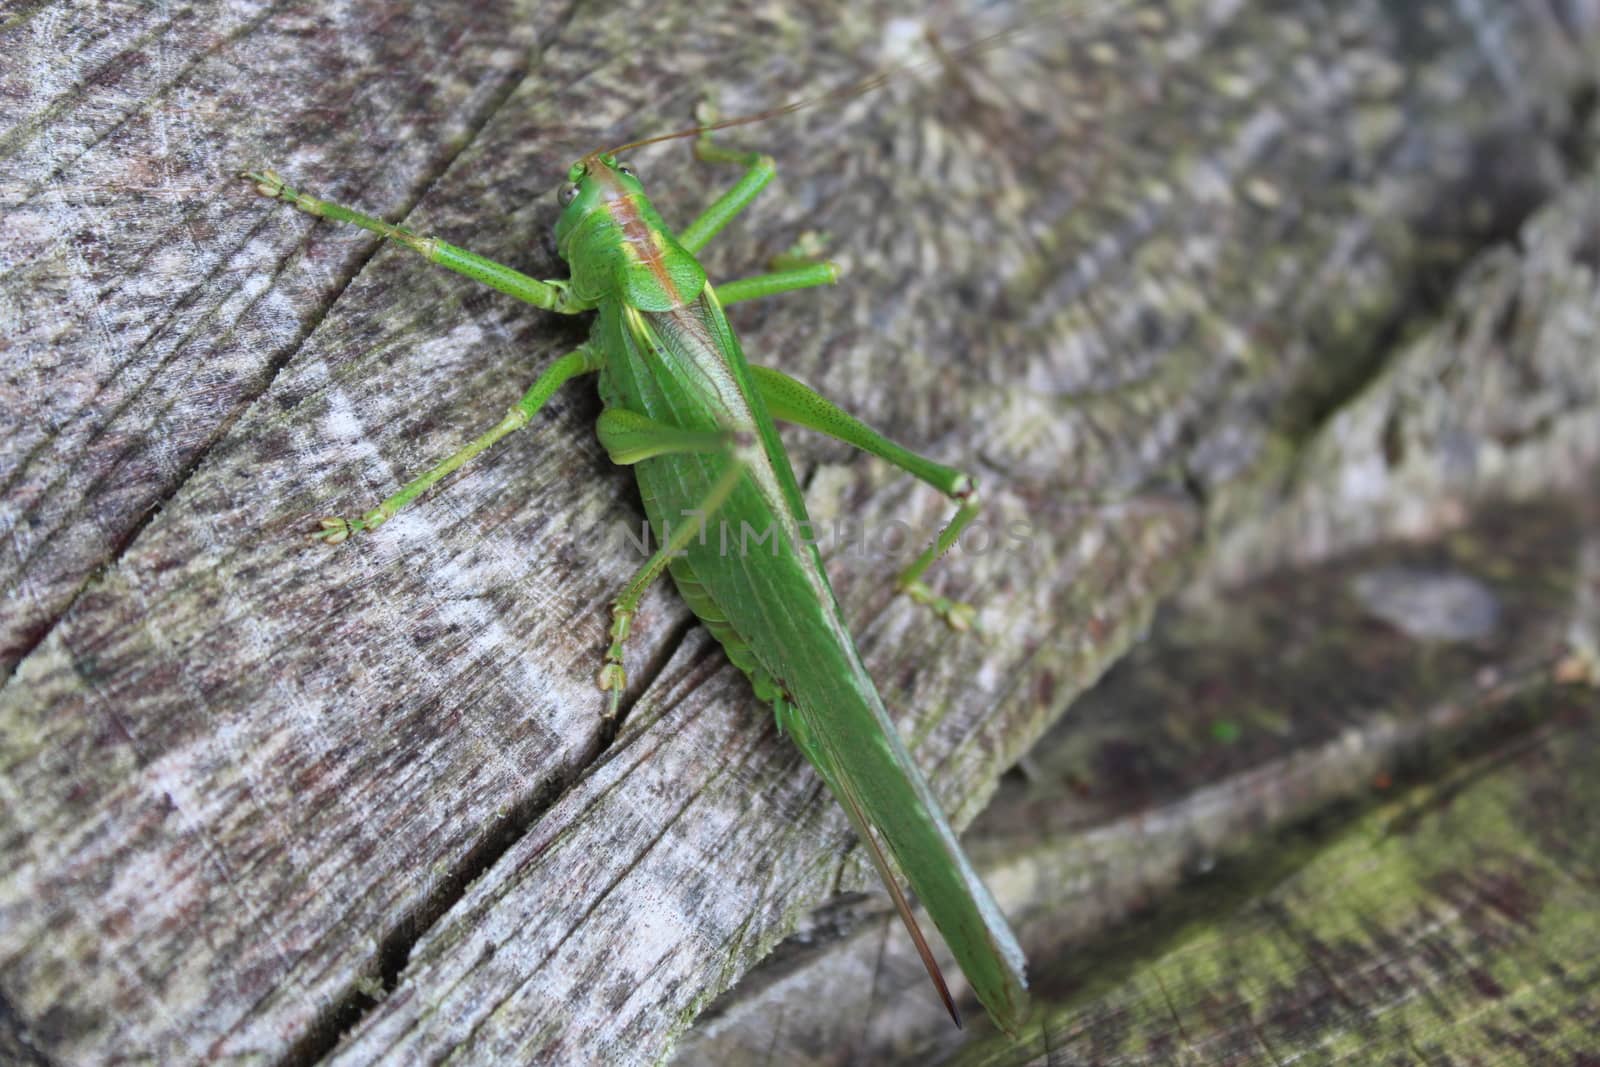 grasshopper in the nature by martina_unbehauen